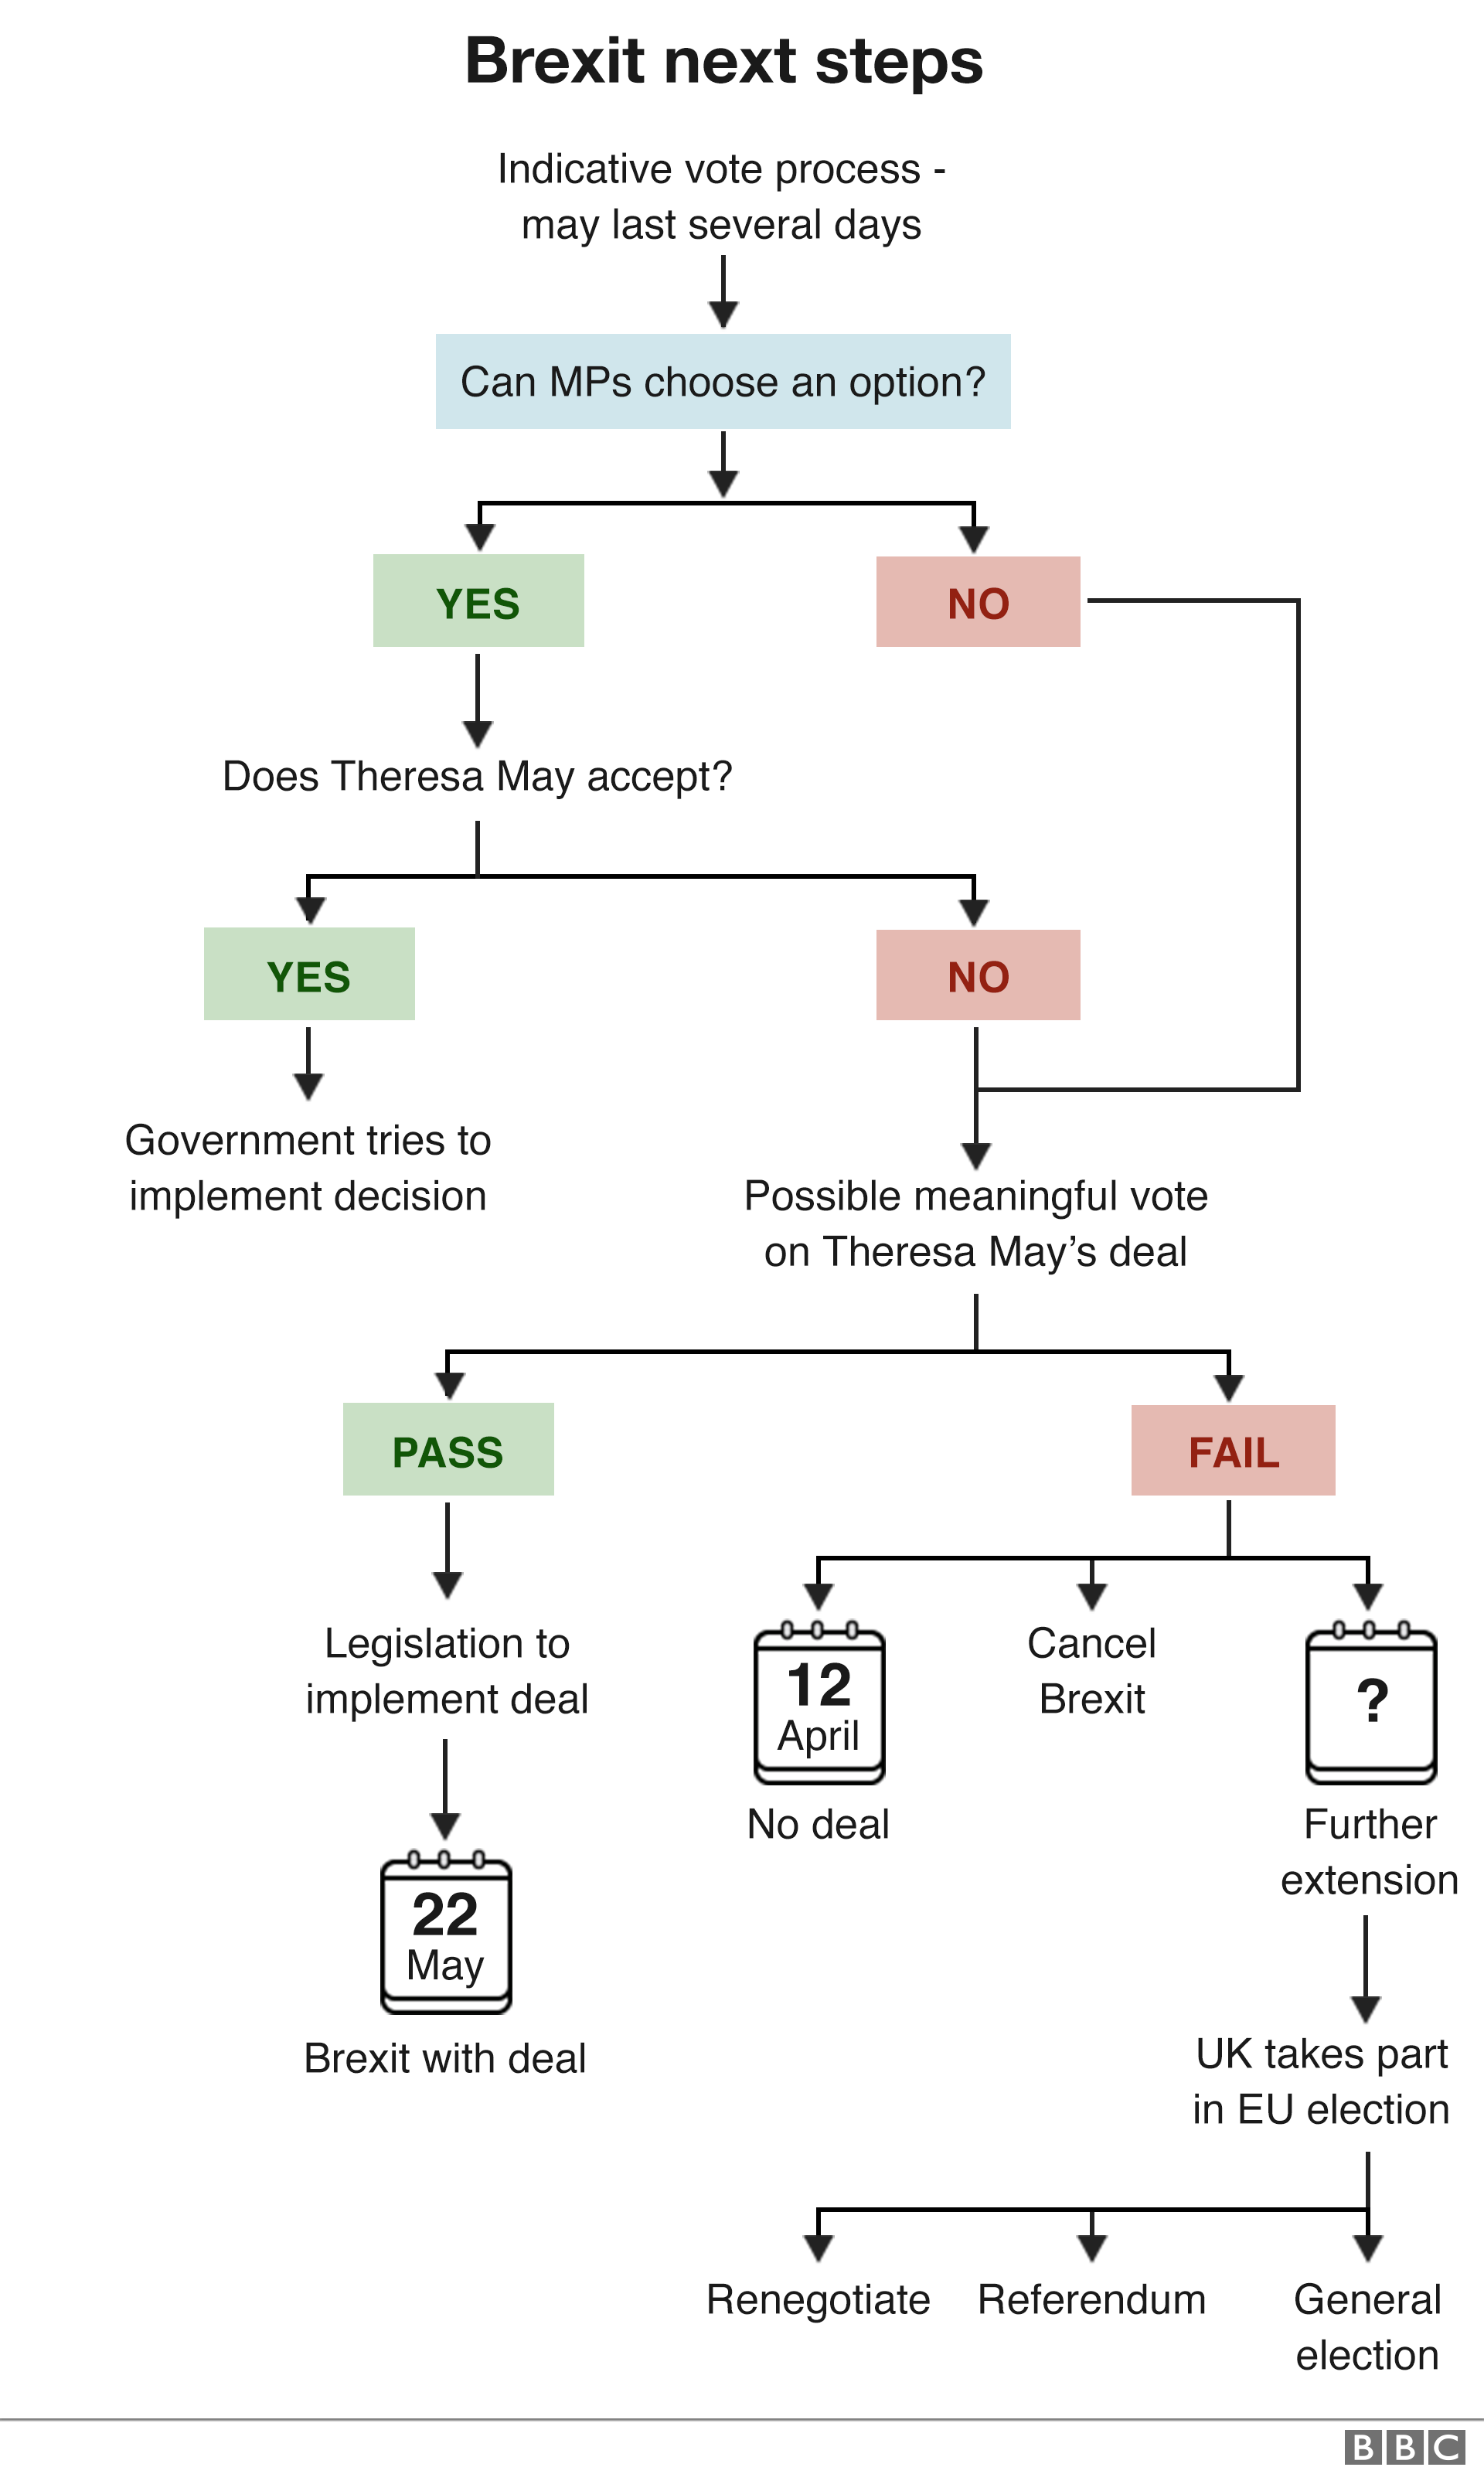 Блок-схема следующих шагов Brexit объясняет, что происходит после индикативных голосований